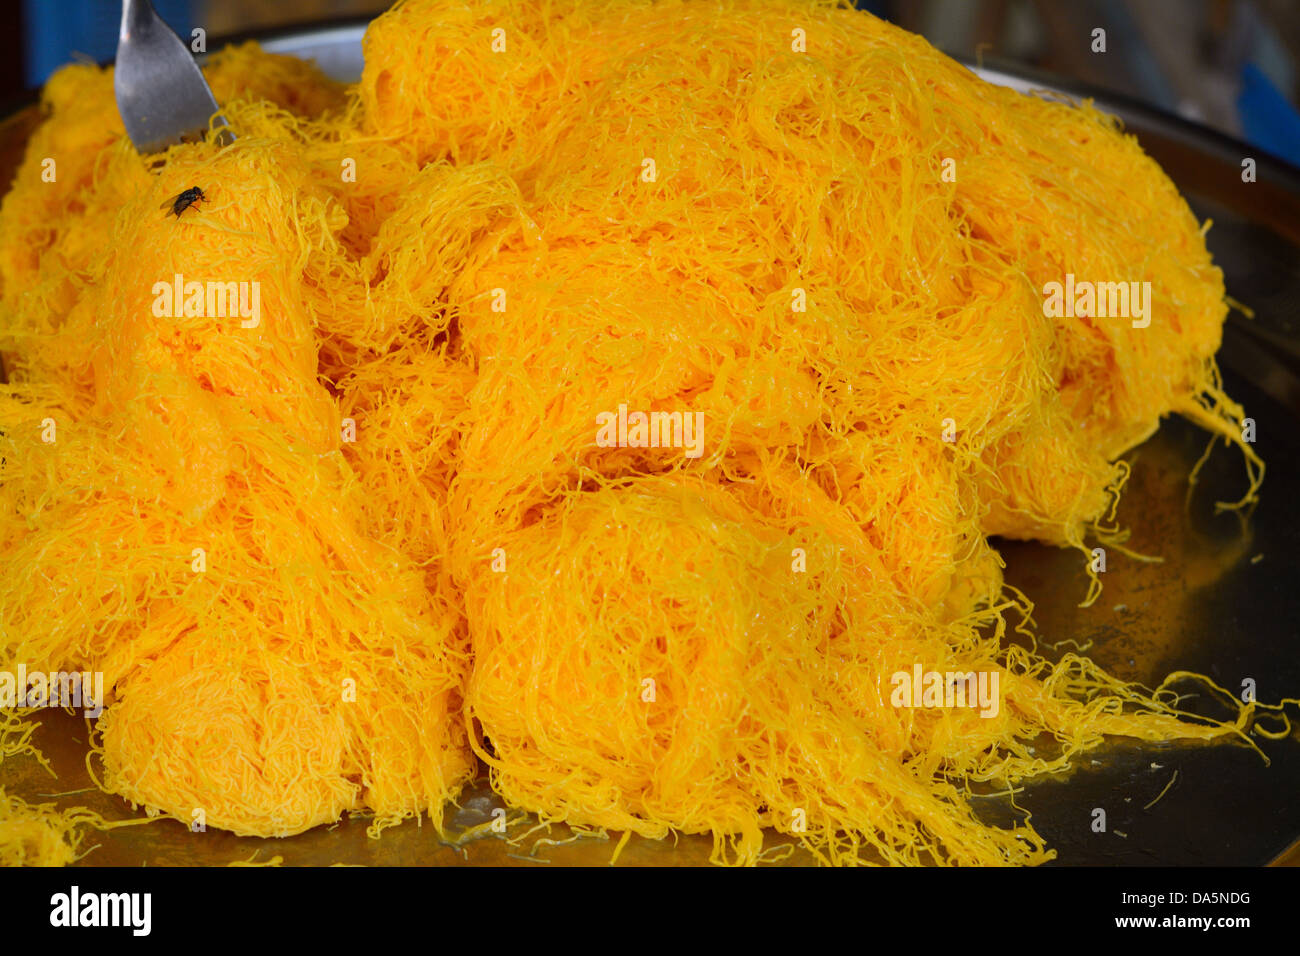 Le foi Thong colorés (jaune d'Oeuf râpé doux) pour vendre au marché thaïlandais Banque D'Images